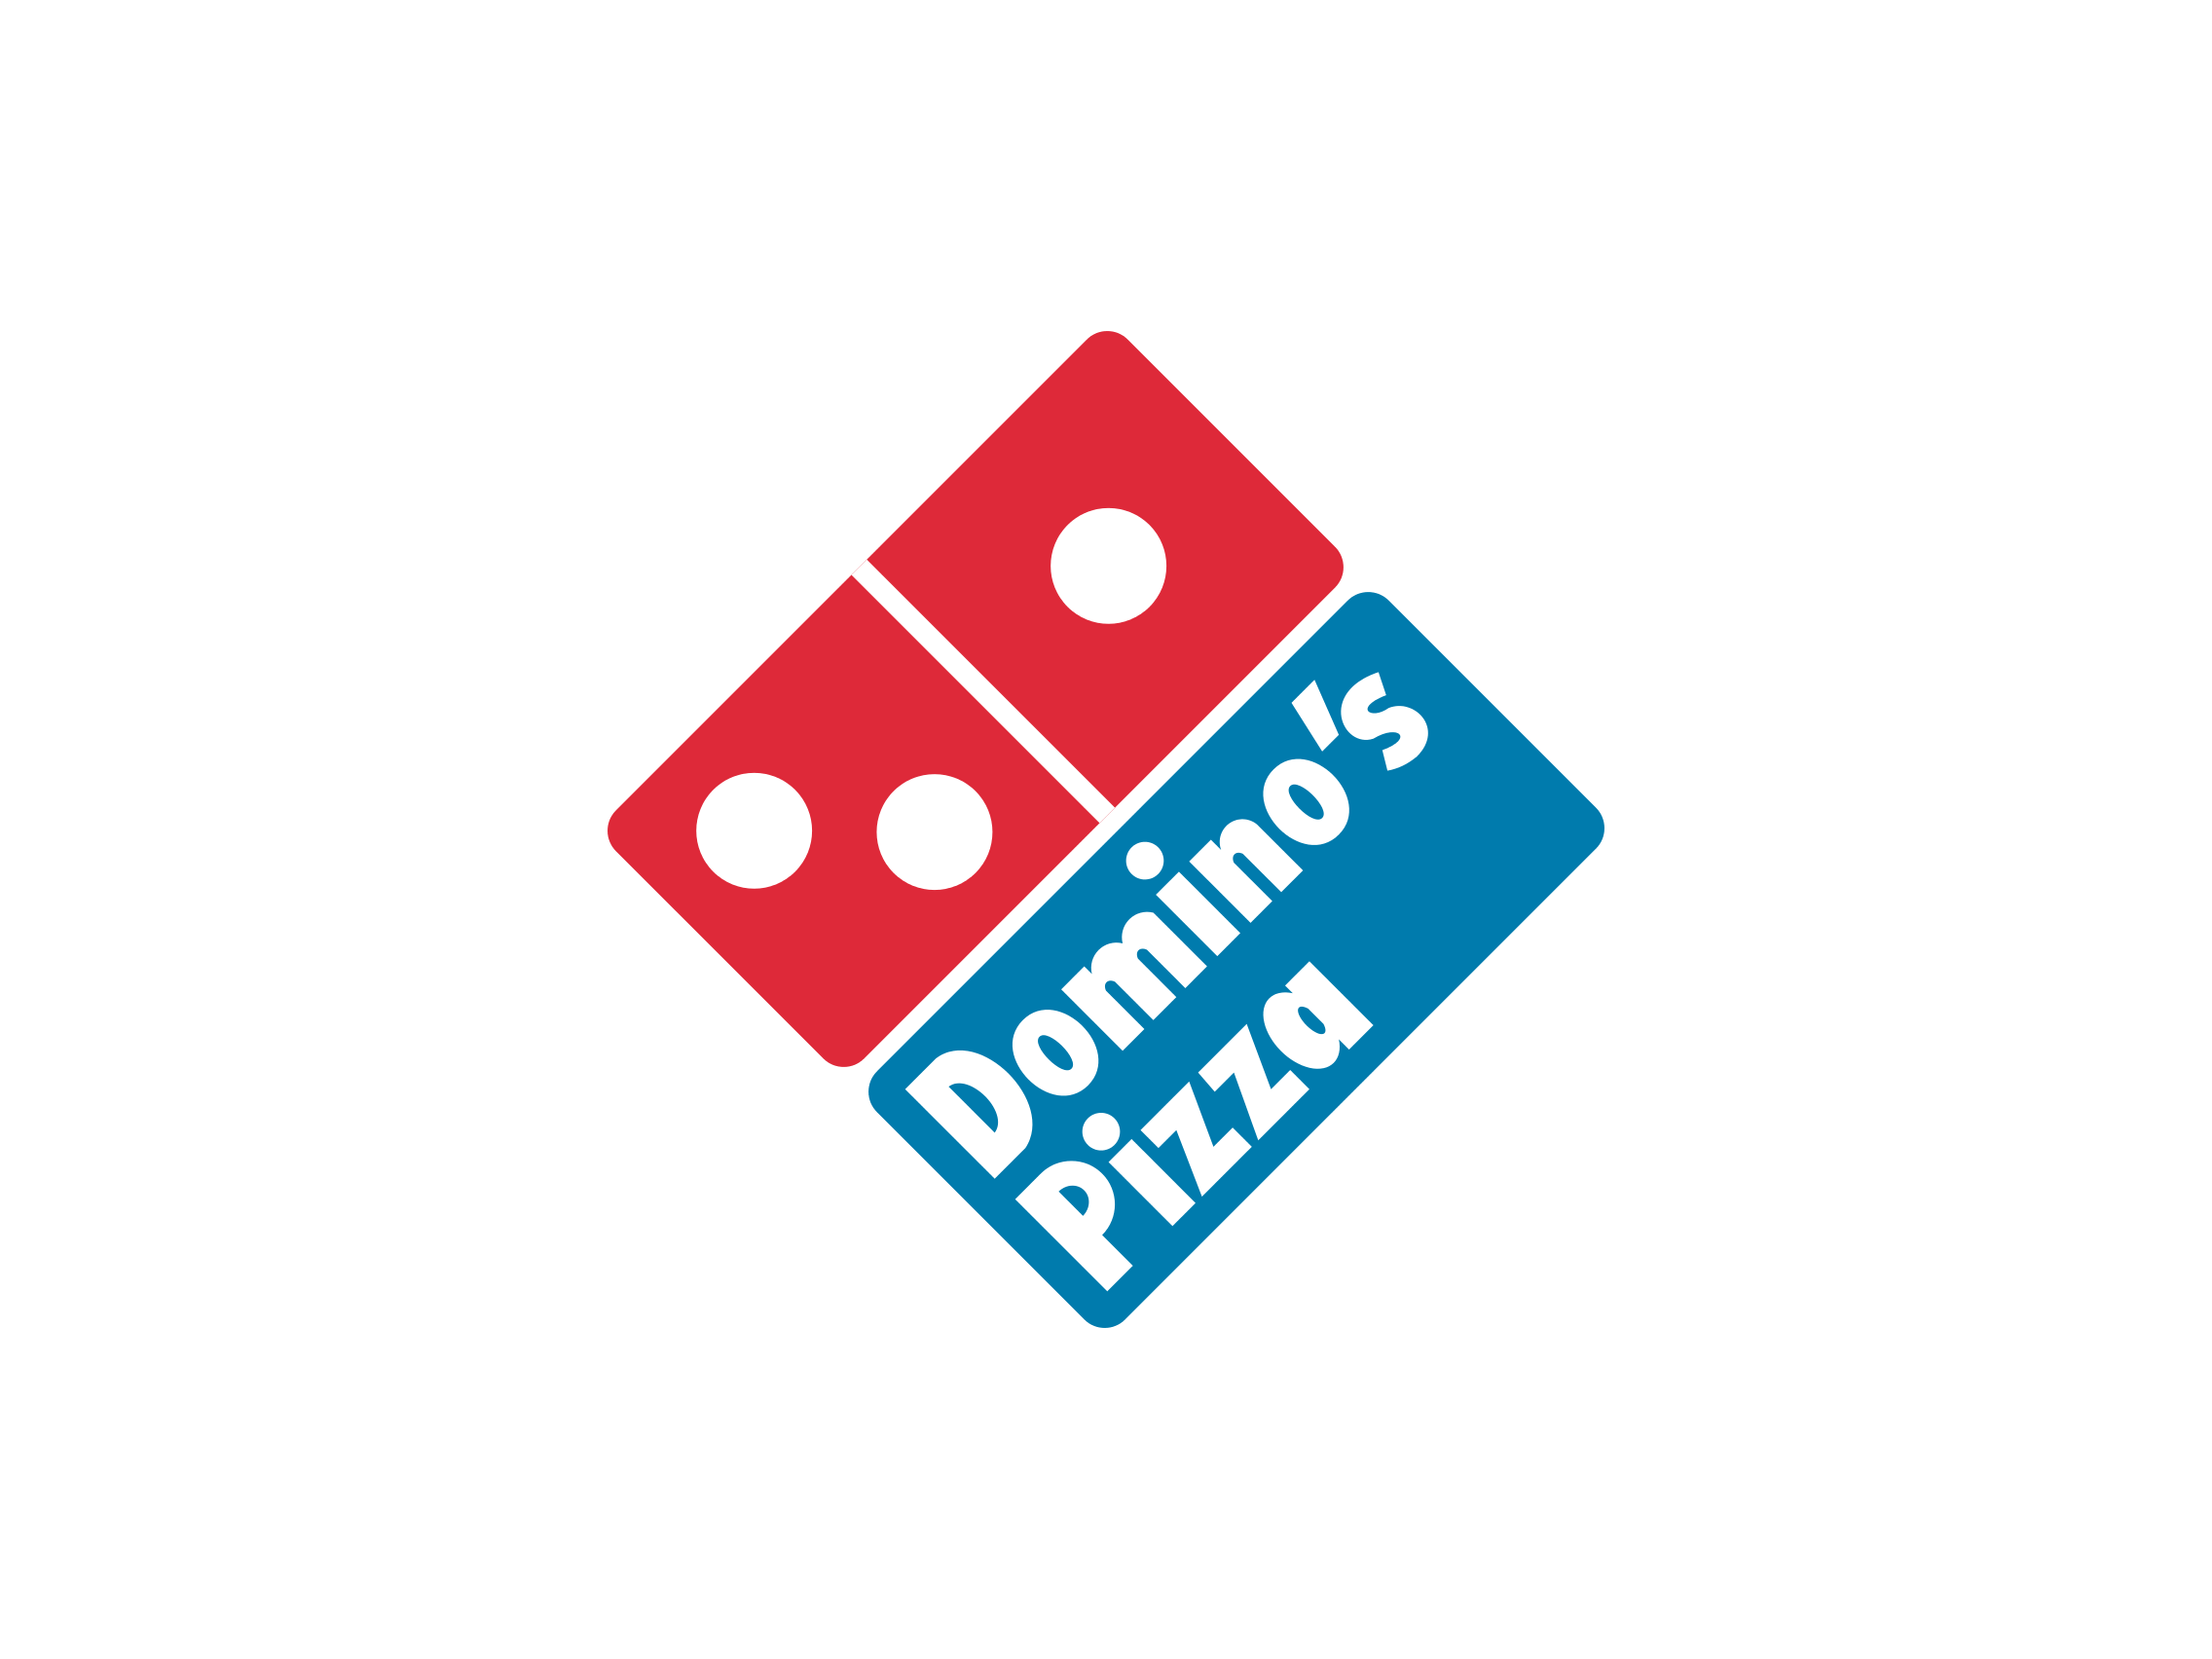 Old Domino's Pizza Logo - Dominos pizza logo old